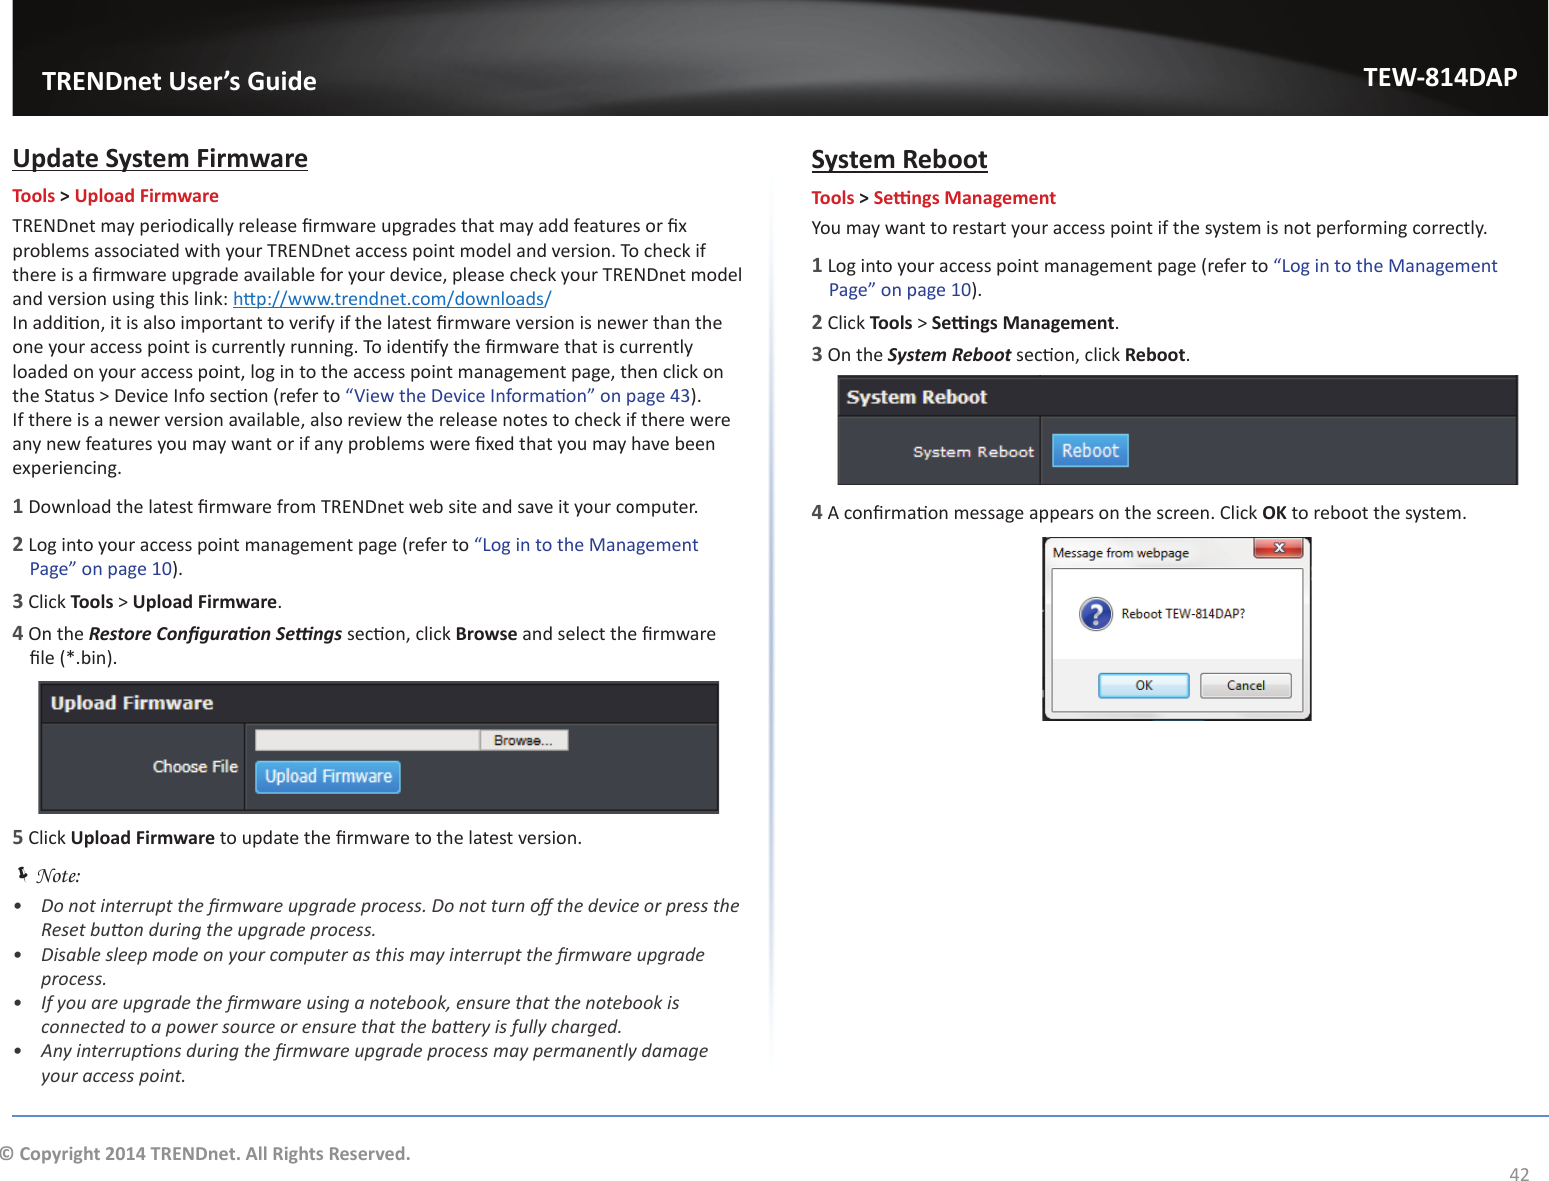                   TRENDnet User’s GuideTEW-814DAP42© Copyright 2014 TRENDnet. All Rights Reserved.hƉĚĂƚĞ^ǇƐƚĞŵ&amp;ŝƌŵǁĂƌĞTools &gt; Upload FirmwaredZEŶĞƚŵĂǇƉĞƌŝŽĚŝĐĂůůǇƌĞůĞĂƐĞĮƌŵǁĂƌĞƵƉŐƌĂĚĞƐƚŚĂƚŵĂǇĂĚĚĨĞĂƚƵƌĞƐŽƌĮǆƉƌŽďůĞŵƐĂƐƐŽĐŝĂƚĞĚǁŝƚŚǇŽƵƌdZEŶĞƚĂĐĐĞƐƐƉŽŝŶƚŵŽĚĞůĂŶĚǀĞƌƐŝŽŶ͘dŽĐŚĞĐŬŝĨƚŚĞƌĞŝƐĂĮƌŵǁĂƌĞƵƉŐƌĂĚĞĂǀĂŝůĂďůĞĨŽƌǇŽƵƌĚĞǀŝĐĞ͕ƉůĞĂƐĞĐŚĞĐŬǇŽƵƌdZEŶĞƚŵŽĚĞůĂŶĚǀĞƌƐŝŽŶƵƐŝŶŐƚŚŝƐůŝŶŬ͗ŚƩƉ͗ͬͬǁǁǁ͘ƚƌĞŶĚŶĞƚ͘ĐŽŵͬĚŽǁŶůŽĂĚƐ//ŶĂĚĚŝƟŽŶ͕ŝƚŝƐĂůƐŽŝŵƉŽƌƚĂŶƚƚŽǀĞƌŝĨǇŝĨƚŚĞůĂƚĞƐƚĮƌŵǁĂƌĞǀĞƌƐŝŽŶŝƐŶĞǁĞƌƚŚĂŶƚŚĞŽŶĞǇŽƵƌĂĐĐĞƐƐƉŽŝŶƚŝƐĐƵƌƌĞŶƚůǇƌƵŶŶŝŶŐ͘dŽŝĚĞŶƟĨǇƚŚĞĮƌŵǁĂƌĞƚŚĂƚŝƐĐƵƌƌĞŶƚůǇůŽĂĚĞĚŽŶǇŽƵƌĂĐĐĞƐƐƉŽŝŶƚ͕ůŽŐŝŶƚŽƚŚĞĂĐĐĞƐƐƉŽŝŶƚŵĂŶĂŐĞŵĞŶƚƉĂŐĞ͕ƚŚĞŶĐůŝĐŬŽŶƚŚĞ^ƚĂƚƵƐхĞǀŝĐĞ/ŶĨŽƐĞĐƟŽŶ;ƌĞĨĞƌƚŽ͞sŝĞǁƚŚĞĞǀŝĐĞ/ŶĨŽƌŵĂƟŽŶ͟ŽŶƉĂŐĞϰϯ). /ĨƚŚĞƌĞŝƐĂŶĞǁĞƌǀĞƌƐŝŽŶĂǀĂŝůĂďůĞ͕ĂůƐŽƌĞǀŝĞǁƚŚĞƌĞůĞĂƐĞŶŽƚĞƐƚŽĐŚĞĐŬŝĨƚŚĞƌĞǁĞƌĞĂŶǇŶĞǁĨĞĂƚƵƌĞƐǇŽƵŵĂǇǁĂŶƚŽƌŝĨĂŶǇƉƌŽďůĞŵƐǁĞƌĞĮǆĞĚƚŚĂƚǇŽƵŵĂǇŚĂǀĞďĞĞŶexperiencing.1ŽǁŶůŽĂĚƚŚĞůĂƚĞƐƚĮƌŵǁĂƌĞĨƌŽŵdZEŶĞƚǁĞďƐŝƚĞĂŶĚƐĂǀĞŝƚǇŽƵƌĐŽŵƉƵƚĞƌ͘2 Log into your access point management page (refer to ͞&gt;ŽŐŝŶƚŽƚŚĞDĂŶĂŐĞŵĞŶƚWĂŐĞ͟ŽŶƉĂŐĞϭϬ).3 Click Tools &gt; Upload Firmware.4 On the ZĞƐƚŽƌĞŽŶĮŐƵƌĂƟŽŶ^ĞƫŶŐƐƐĞĐƟŽŶ͕ĐůŝĐŬBrowseĂŶĚƐĞůĞĐƚƚŚĞĮƌŵǁĂƌĞĮůĞ;Ύ͘ďŝŶͿ͘5 Click Upload FirmwareƚŽƵƉĚĂƚĞƚŚĞĮƌŵǁĂƌĞƚŽƚŚĞůĂƚĞƐƚǀĞƌƐŝŽŶ͘ ÍNote: ͻ ŽŶŽƚŝŶƚĞƌƌƵƉƚƚŚĞĮƌŵǁĂƌĞƵƉŐƌĂĚĞƉƌŽĐĞƐƐ͘ŽŶŽƚƚƵƌŶŽīƚŚĞĚĞǀŝĐĞŽƌƉƌĞƐƐƚŚĞZĞƐĞƚďƵƩŽŶĚƵƌŝŶŐƚŚĞƵƉŐƌĂĚĞƉƌŽĐĞƐƐ͘ͻ ŝƐĂďůĞƐůĞĞƉŵŽĚĞŽŶǇŽƵƌĐŽŵƉƵƚĞƌĂƐƚŚŝƐŵĂǇŝŶƚĞƌƌƵƉƚƚŚĞĮƌŵǁĂƌĞƵƉŐƌĂĚĞƉƌŽĐĞƐƐ͘ͻ /ĨǇŽƵĂƌĞƵƉŐƌĂĚĞƚŚĞĮƌŵǁĂƌĞƵƐŝŶŐĂŶŽƚĞďŽŽŬ͕ĞŶƐƵƌĞƚŚĂƚƚŚĞŶŽƚĞďŽŽŬŝƐĐŽŶŶĞĐƚĞĚƚŽĂƉŽǁĞƌƐŽƵƌĐĞŽƌĞŶƐƵƌĞƚŚĂƚƚŚĞďĂƩĞƌǇŝƐĨƵůůǇĐŚĂƌŐĞĚ͘ͻ ŶǇŝŶƚĞƌƌƵƉƟŽŶƐĚƵƌŝŶŐƚŚĞĮƌŵǁĂƌĞƵƉŐƌĂĚĞƉƌŽĐĞƐƐŵĂǇƉĞƌŵĂŶĞŶƚůǇĚĂŵĂŐĞǇŽƵƌĂĐĐĞƐƐƉŽŝŶƚ͘^ǇƐƚĞŵZĞďŽŽƚTools &gt; ^ĞƫŶŐƐDĂŶĂŐĞŵĞŶƚYou may want to restart your access point if the system is not performing correctly.1 Log into your access point management page (refer to ͞&gt;ŽŐŝŶƚŽƚŚĞDĂŶĂŐĞŵĞŶƚWĂŐĞ͟ŽŶƉĂŐĞϭϬ).2 Click Tools &gt; ^ĞƫŶŐƐDĂŶĂŐĞŵĞŶƚ.3 On the ^ǇƐƚĞŵZĞďŽŽƚƐĞĐƟŽŶ͕ĐůŝĐŬReboot.4ĐŽŶĮƌŵĂƟŽŶŵĞƐƐĂŐĞĂƉƉĞĂƌƐŽŶƚŚĞƐĐƌĞĞŶ͘ůŝĐŬOKƚŽƌĞďŽŽƚƚŚĞƐǇƐƚĞŵ͘